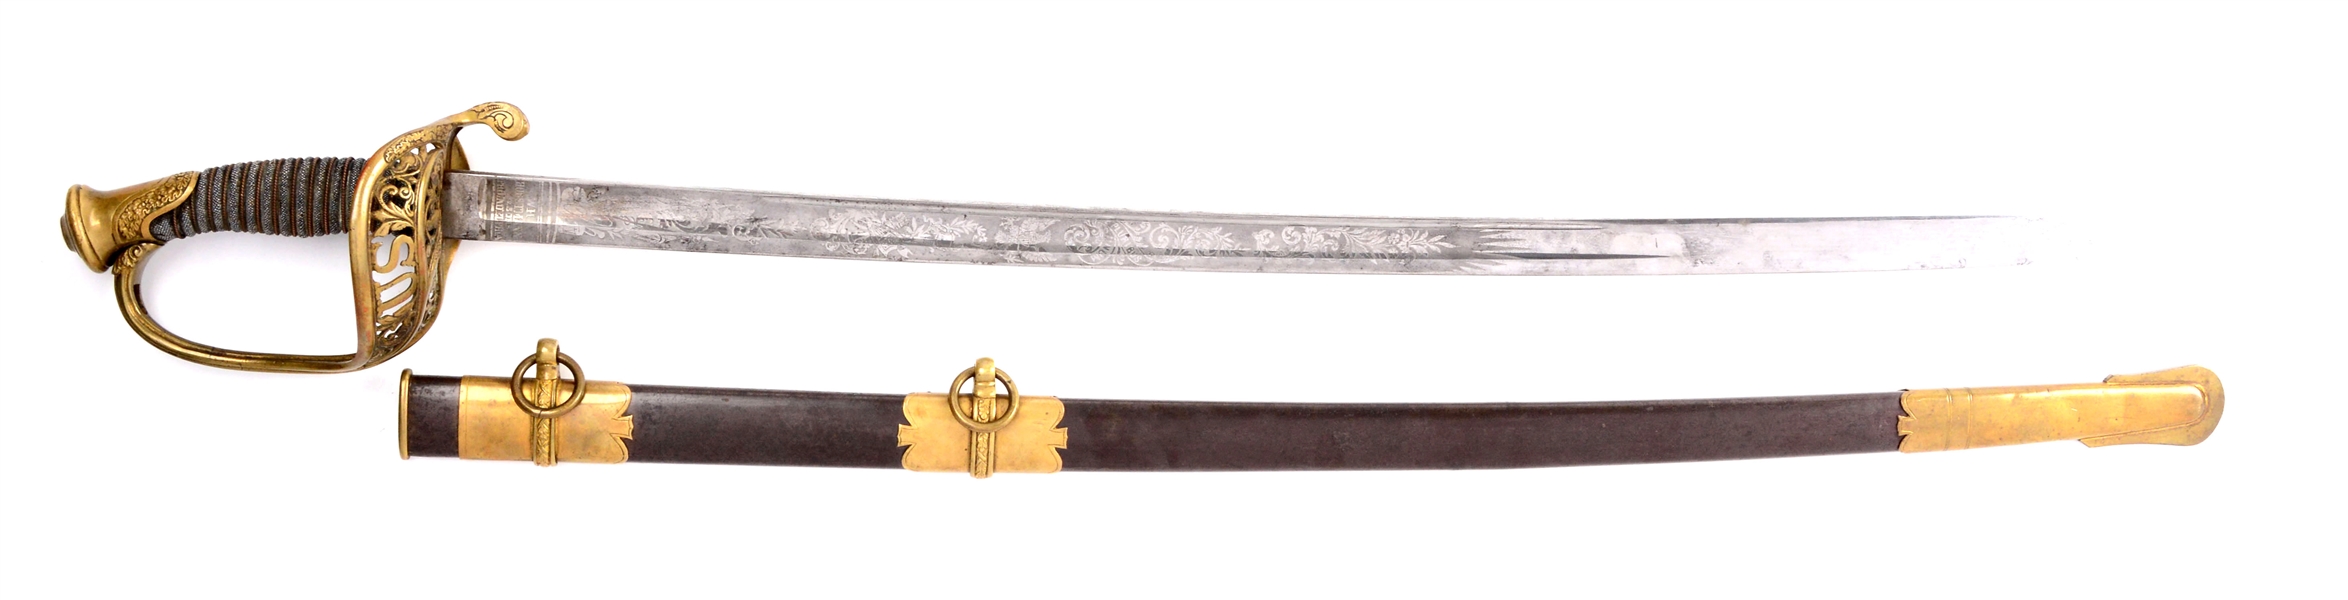 U.S. MODEL 1850 STAFF & FIELD SWORD BY HORSTMANN.